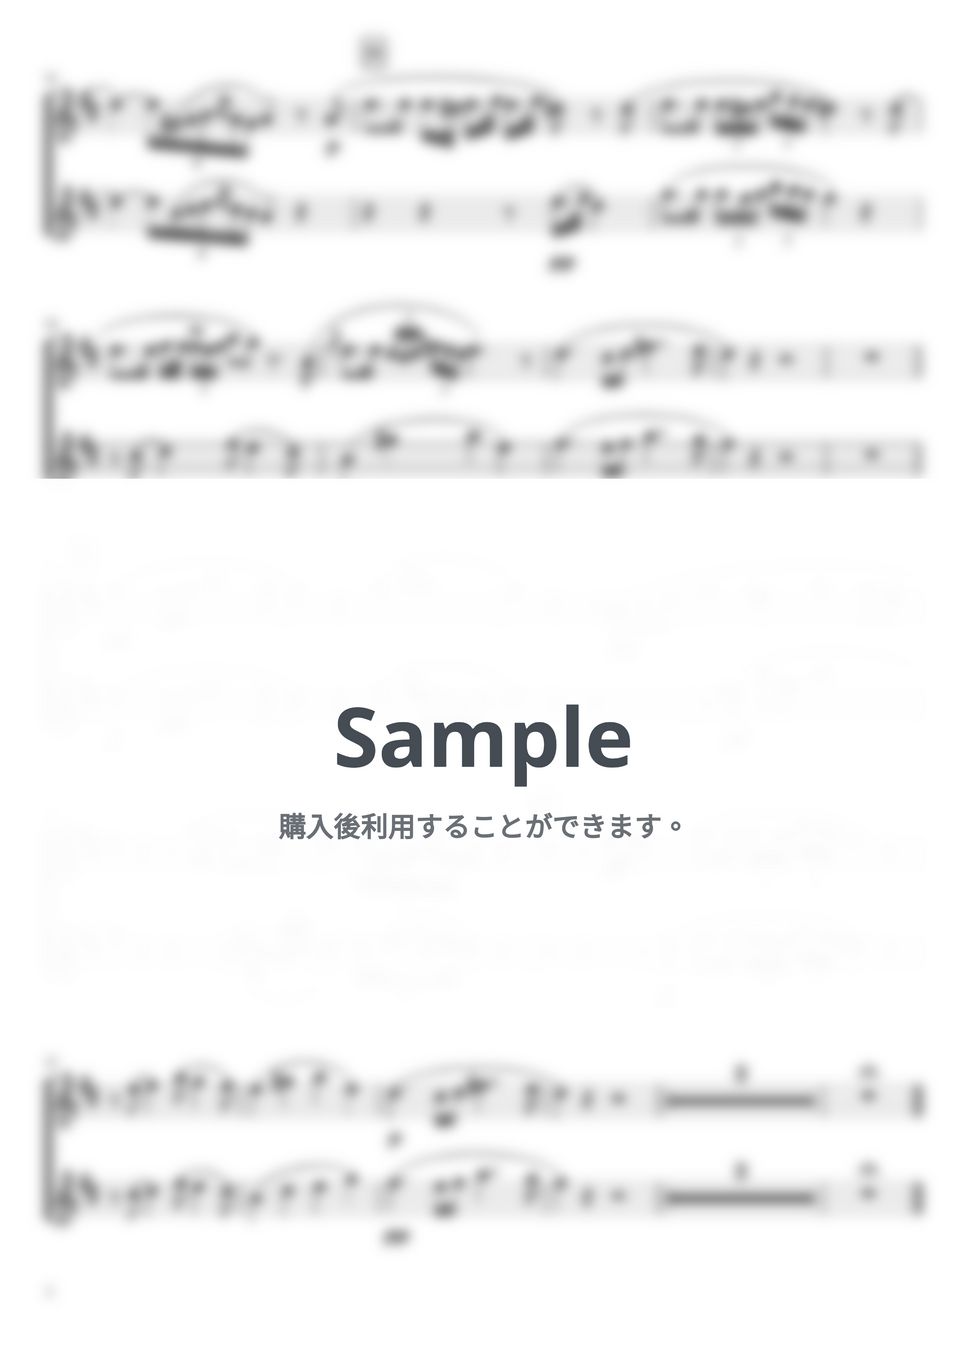 シューベルト - アヴェマリア (C・ピアノトリオ(ソプラノサックス&テナーサックス二重奏)) by pfkaori